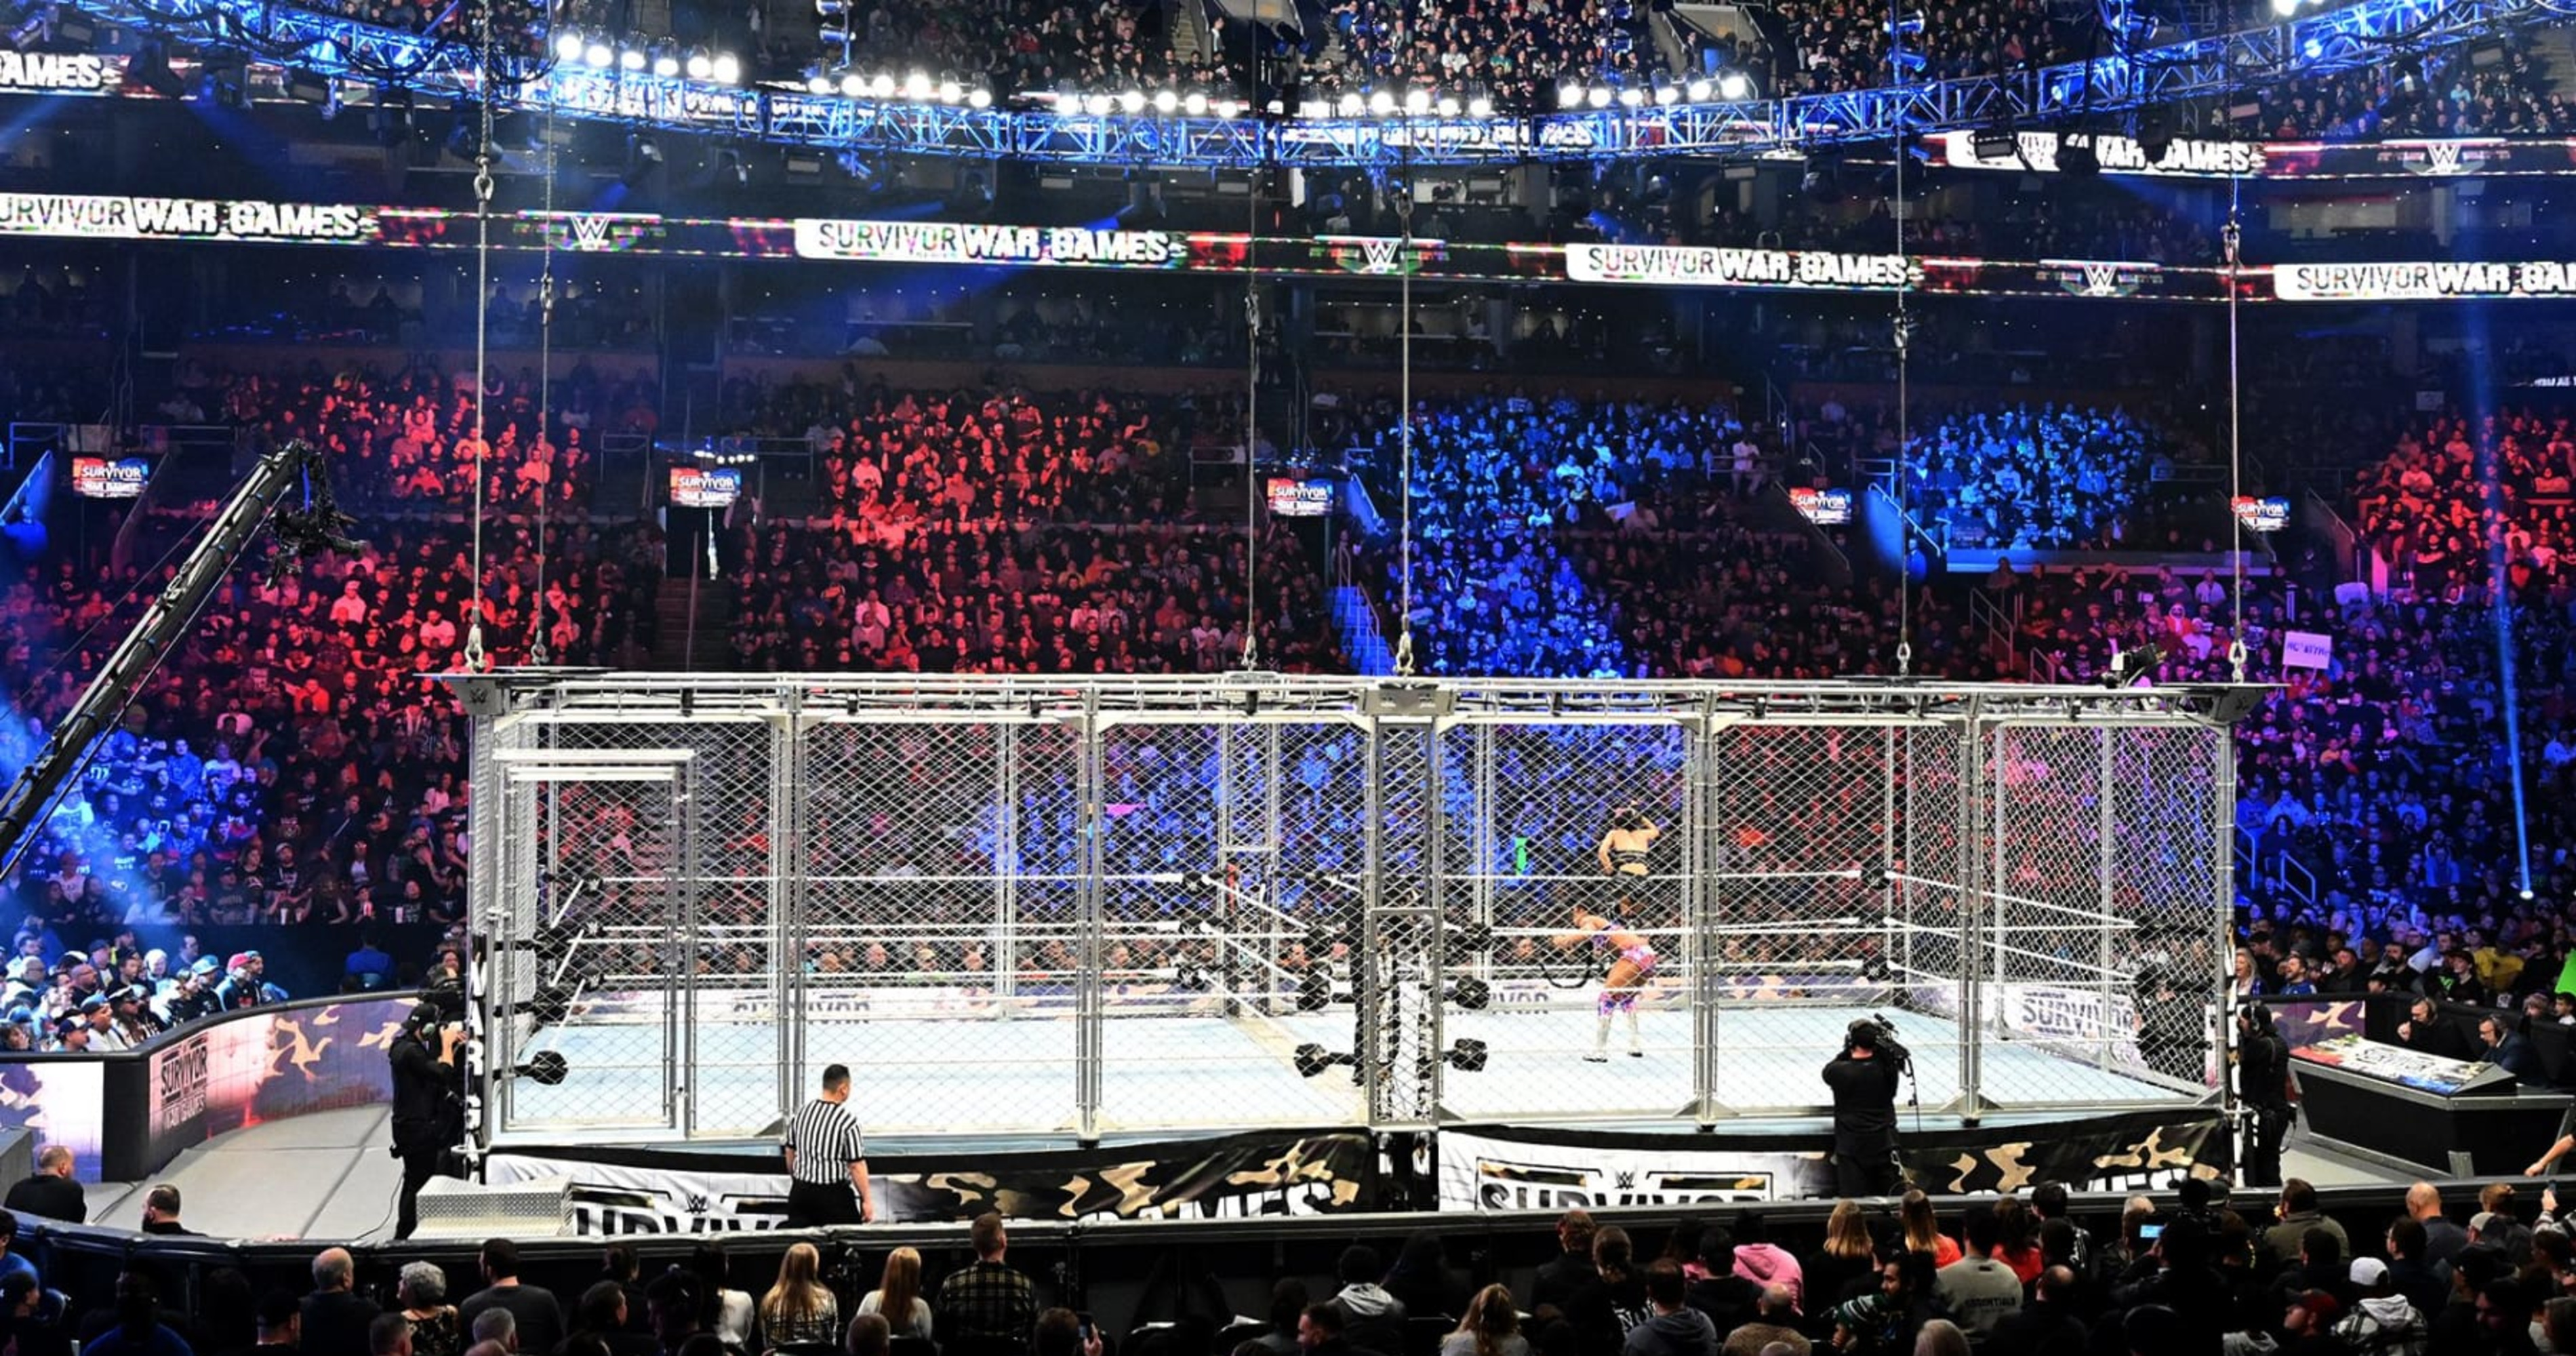 WWE SURVIVOR SERIES WARGAMES 2023 DREAM MATCH CARD PREDICTION 